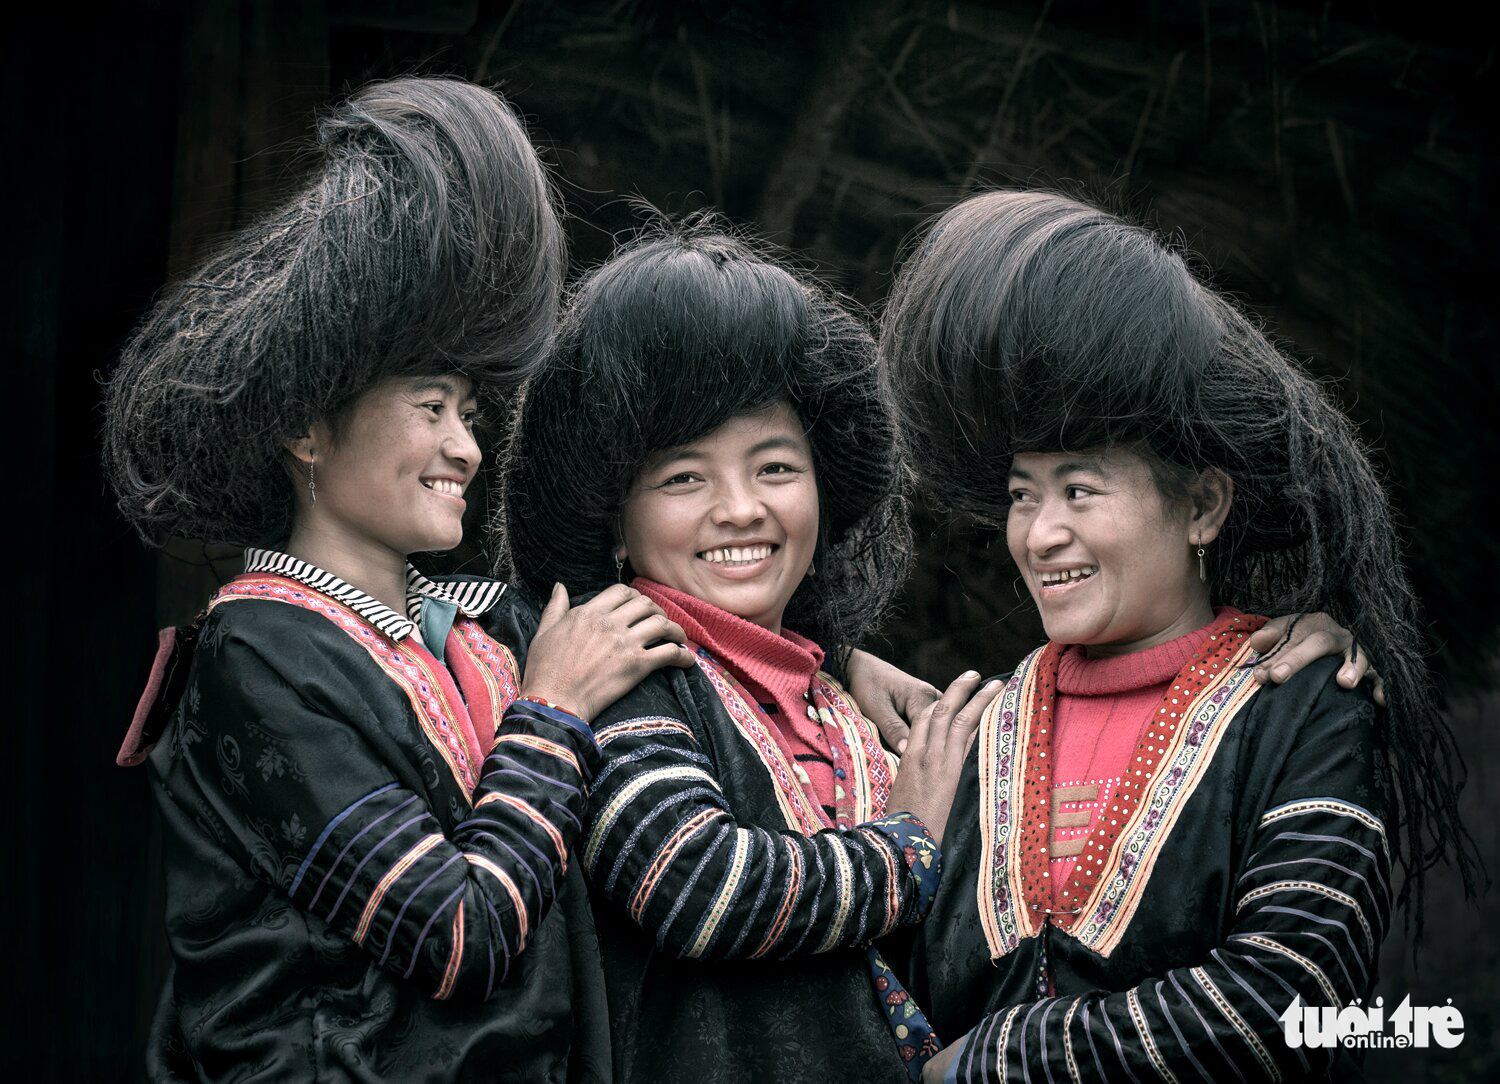 'Nu cuoi Tay Bac so 3' (Северо-западная улыбка №.3) фотографа Дао Тьен Дат